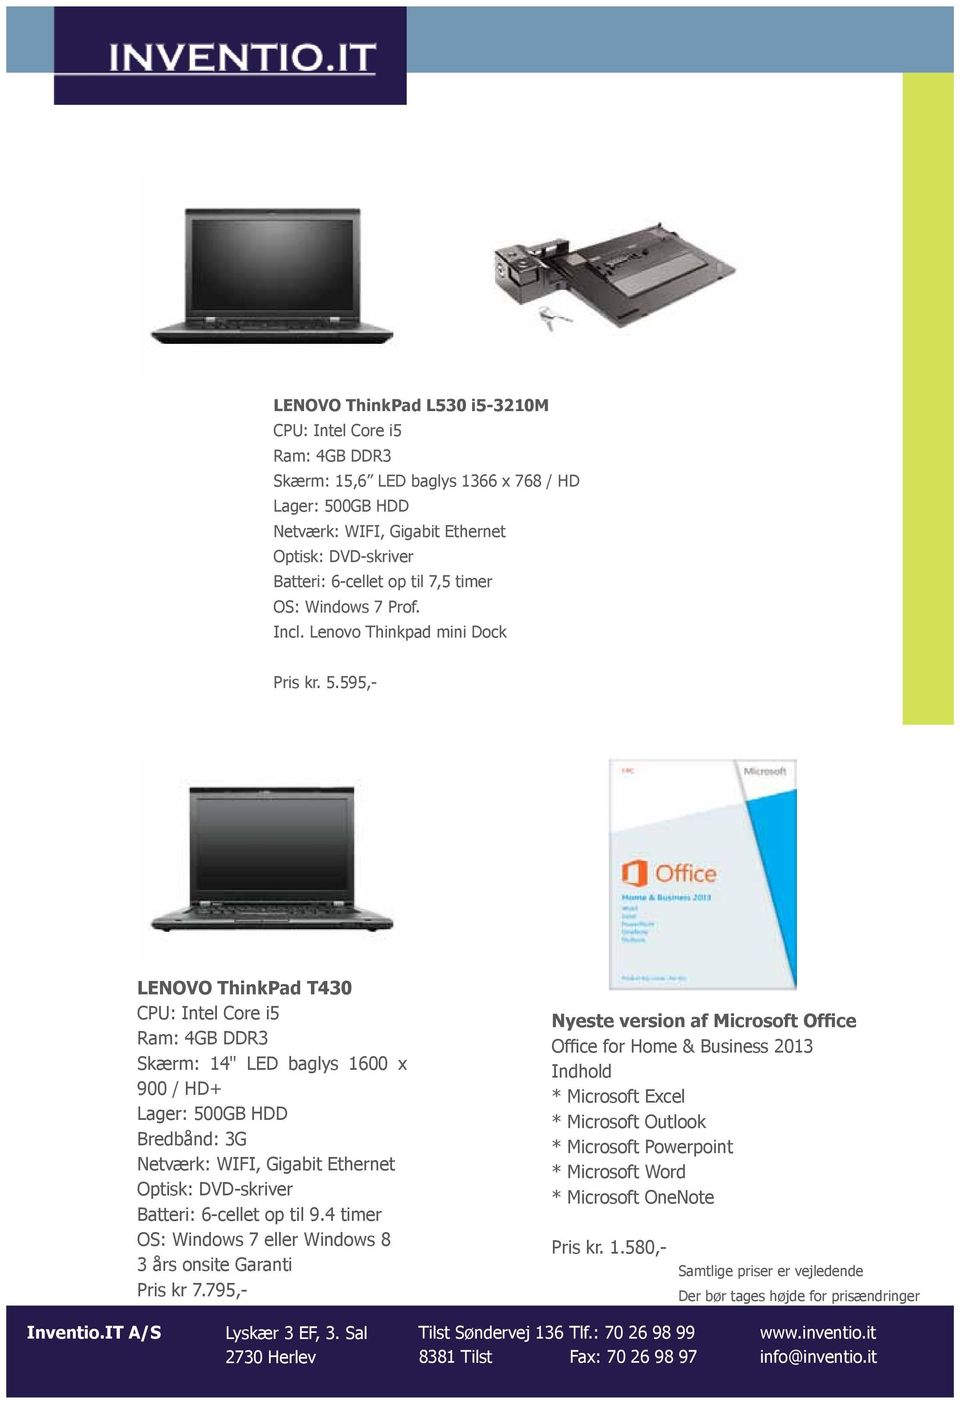 595,- LENOVO ThinkPad T430 CPU: Intel Core i5 Skærm: 14" LED baglys 1600 x 900 / HD+ Lager: 500GB HDD Bredbånd: 3G Netværk: WIFI, Gigabit Ethernet Optisk: DVD-skriver Batteri: 6-cellet op til 9.